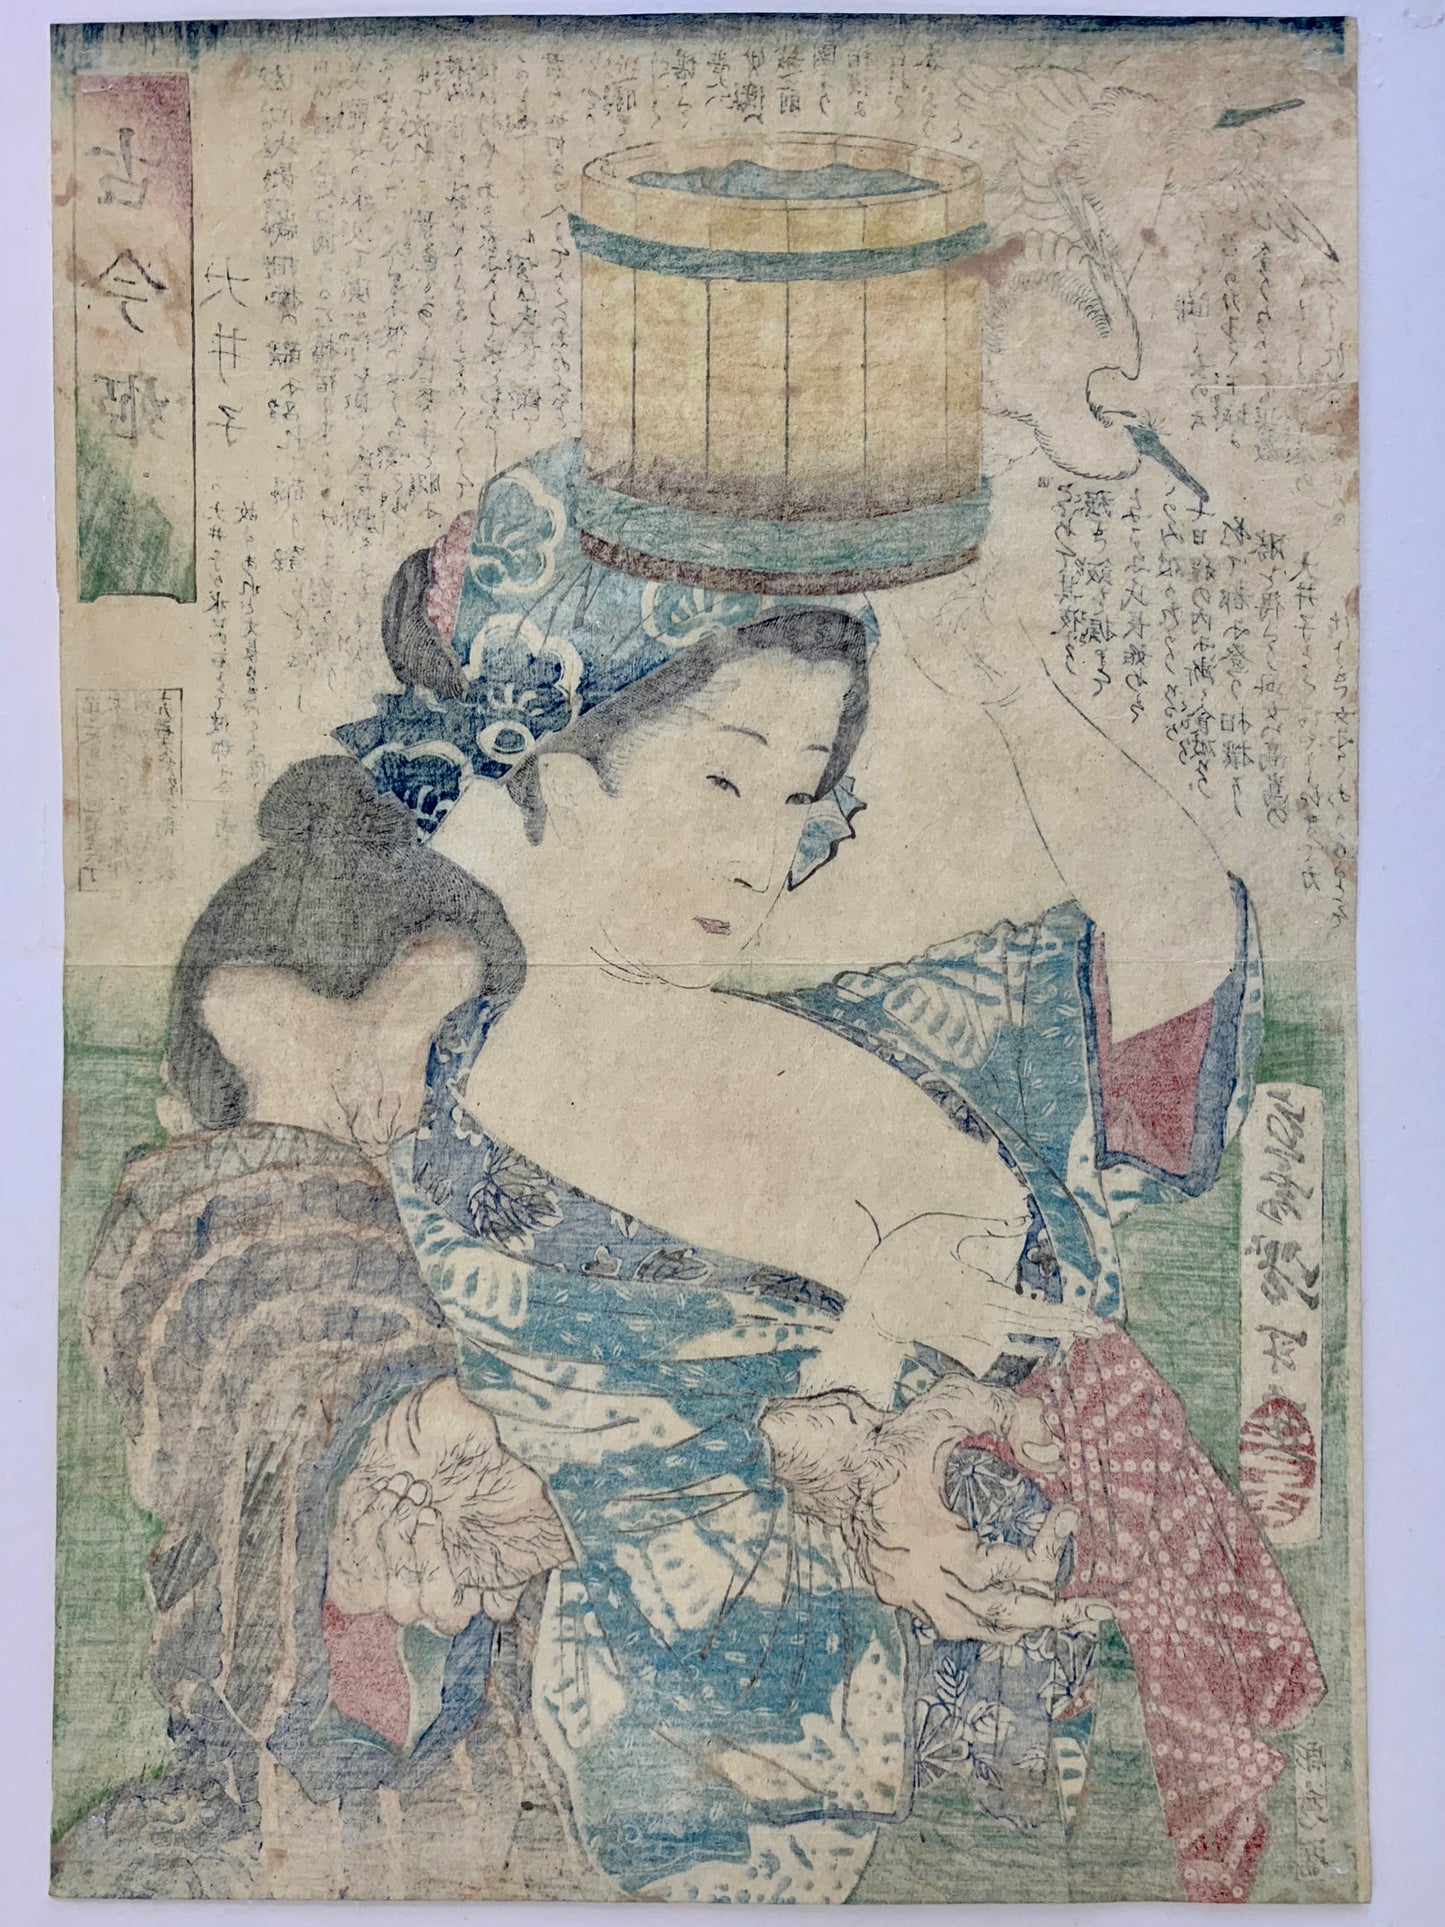 estampe japonaise une femme serre le bras dans homme voulant toucher son sein dénudé, dos de l'estampe